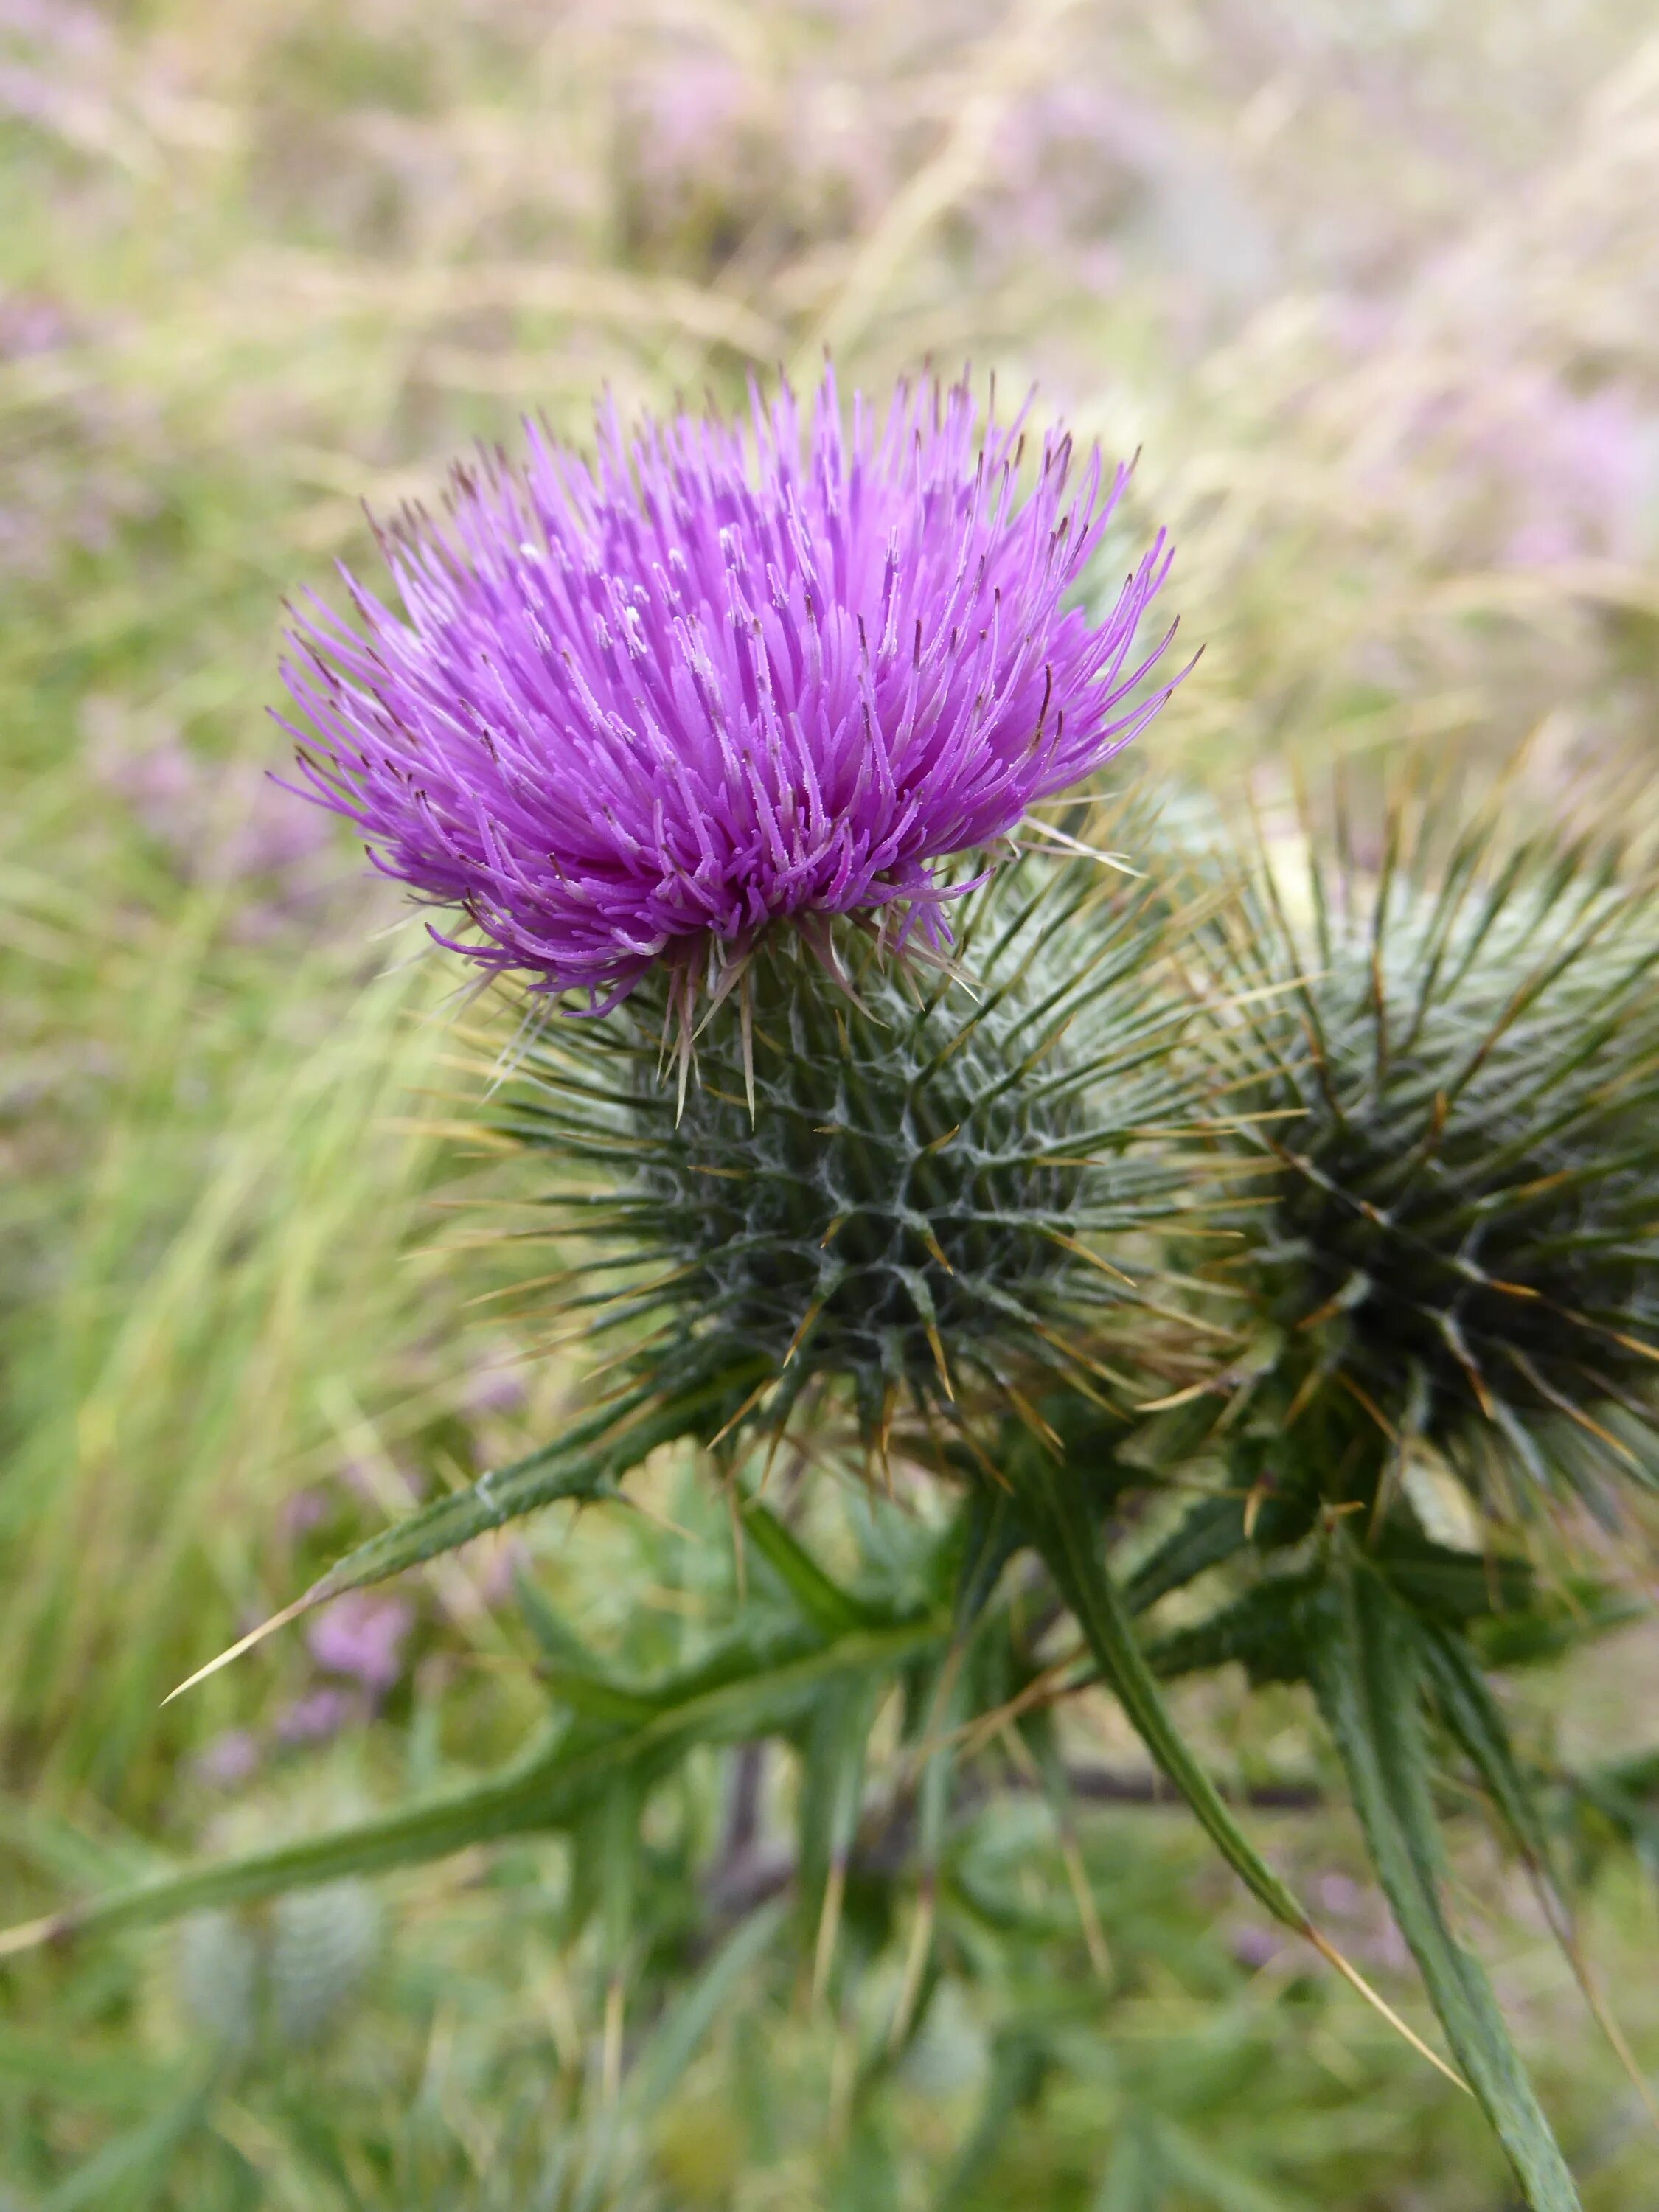 Scotland plants. Чертополох Шотландия. Шотландия цветок чертополоха. Национальный цветок Шотландии чертополох. Чертополох символ Шотландии.